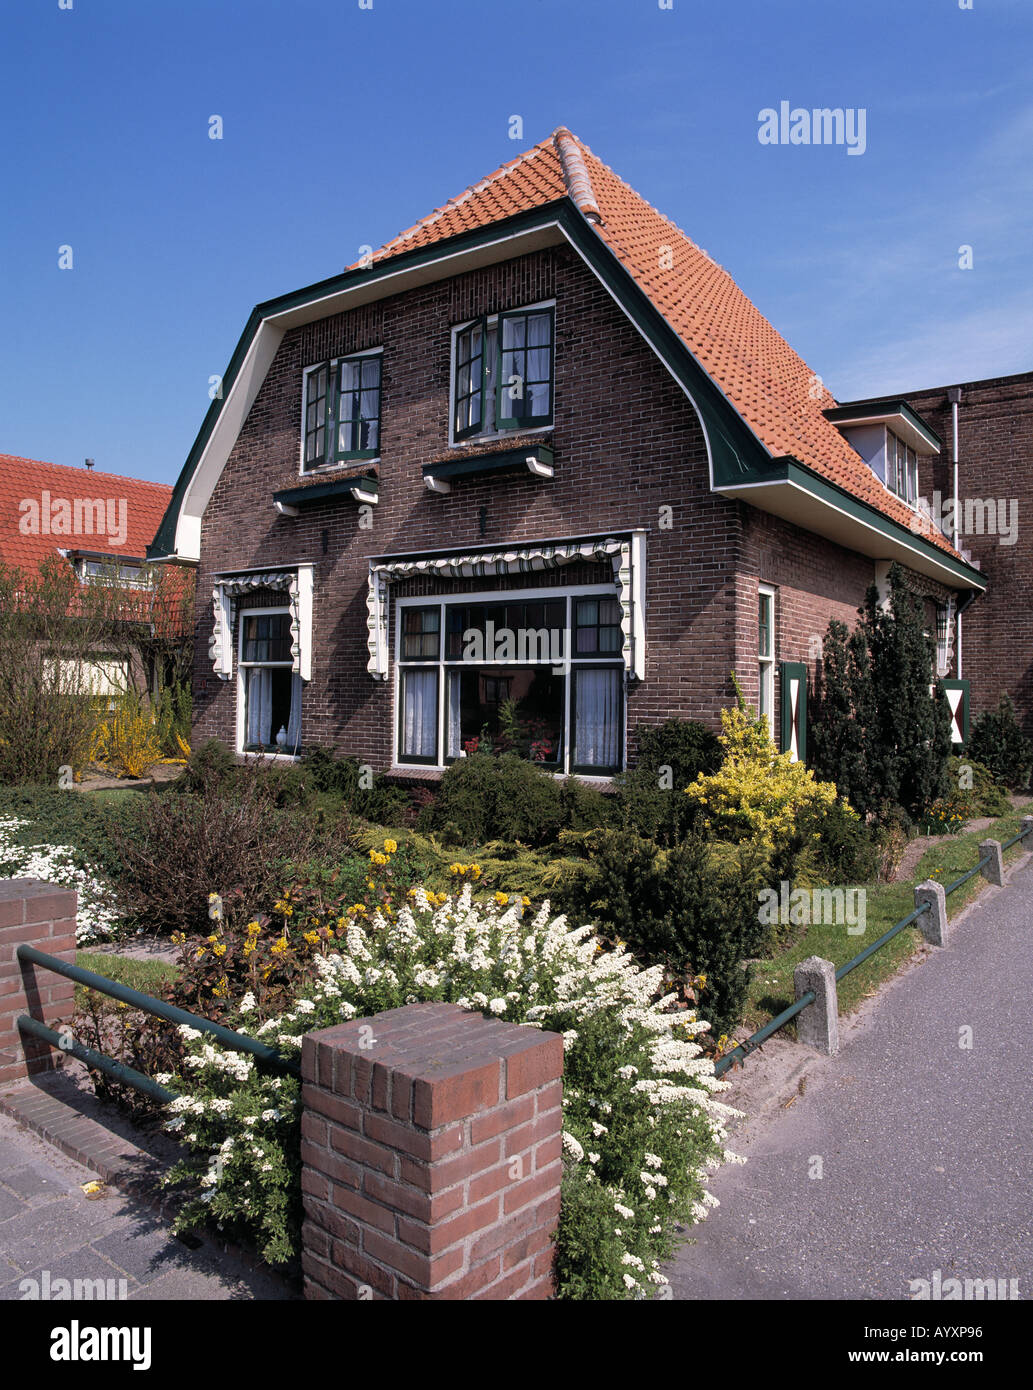 Einfamilienhaus mit Vorgarten, Rijnsburg, Suedholland, Niederlande Banque D'Images